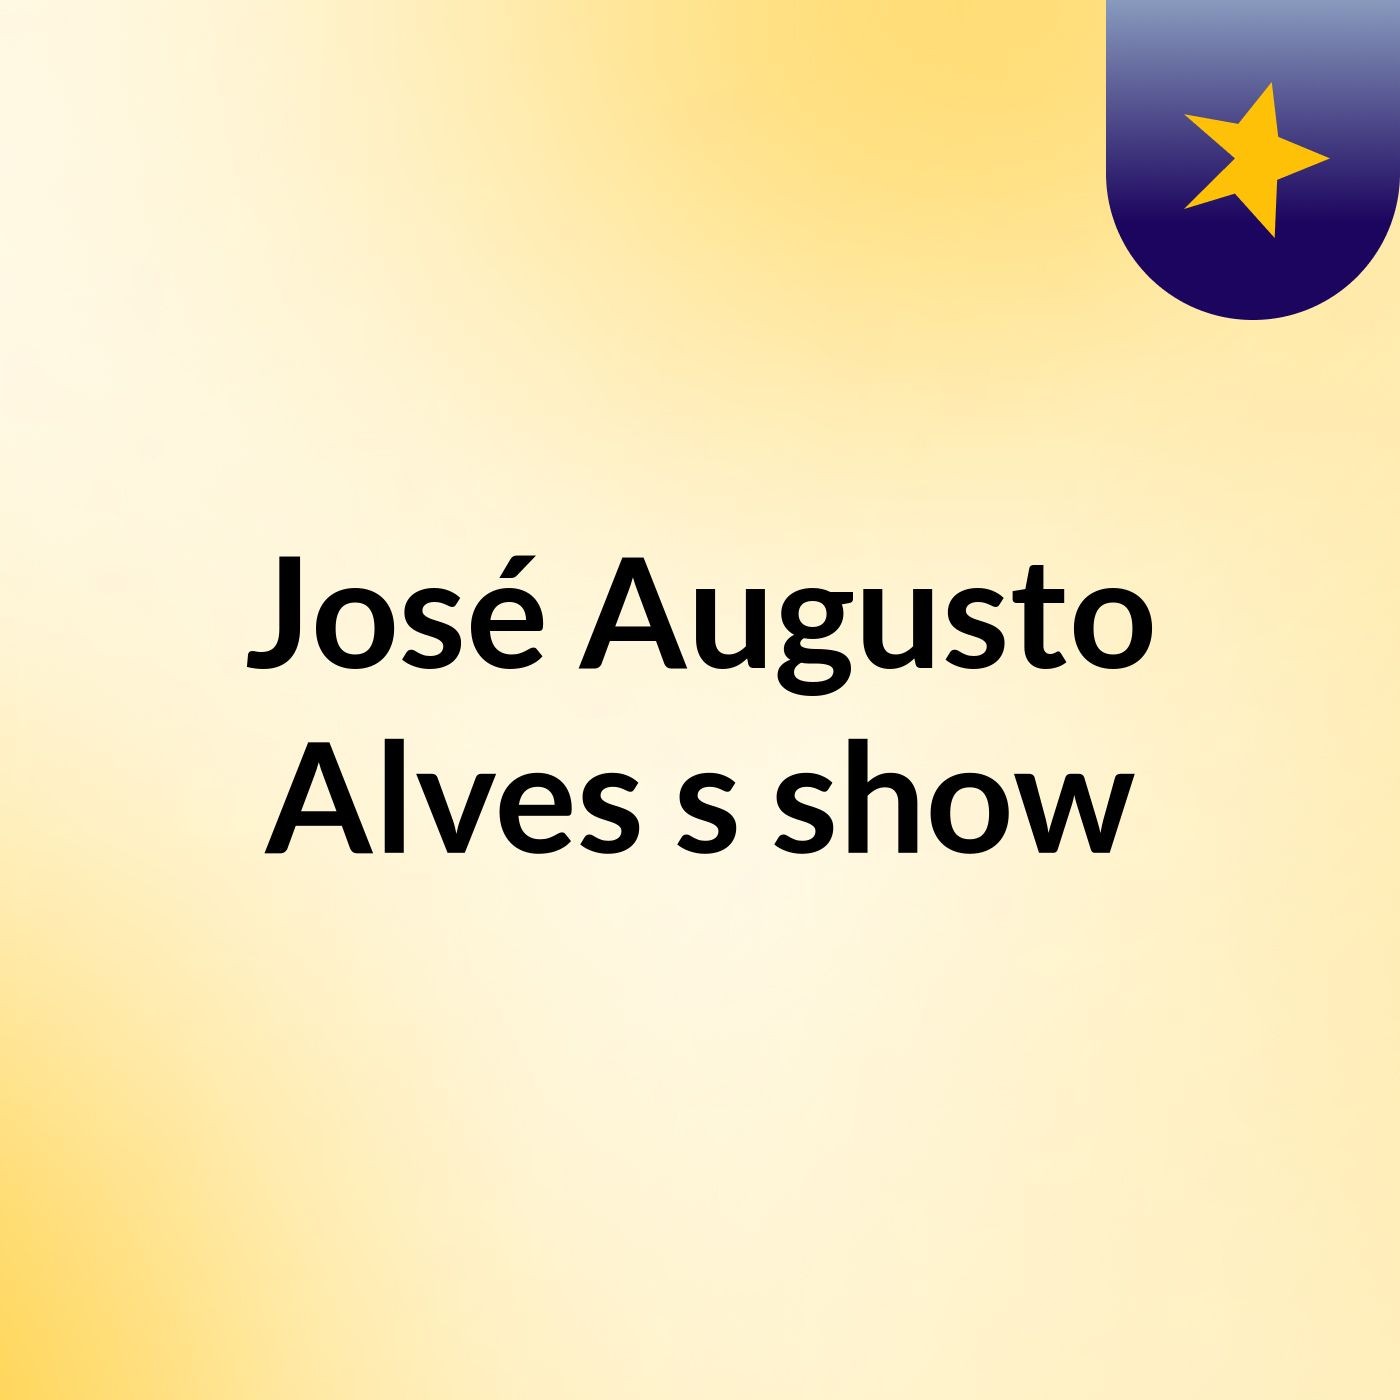 José Augusto Alves's show